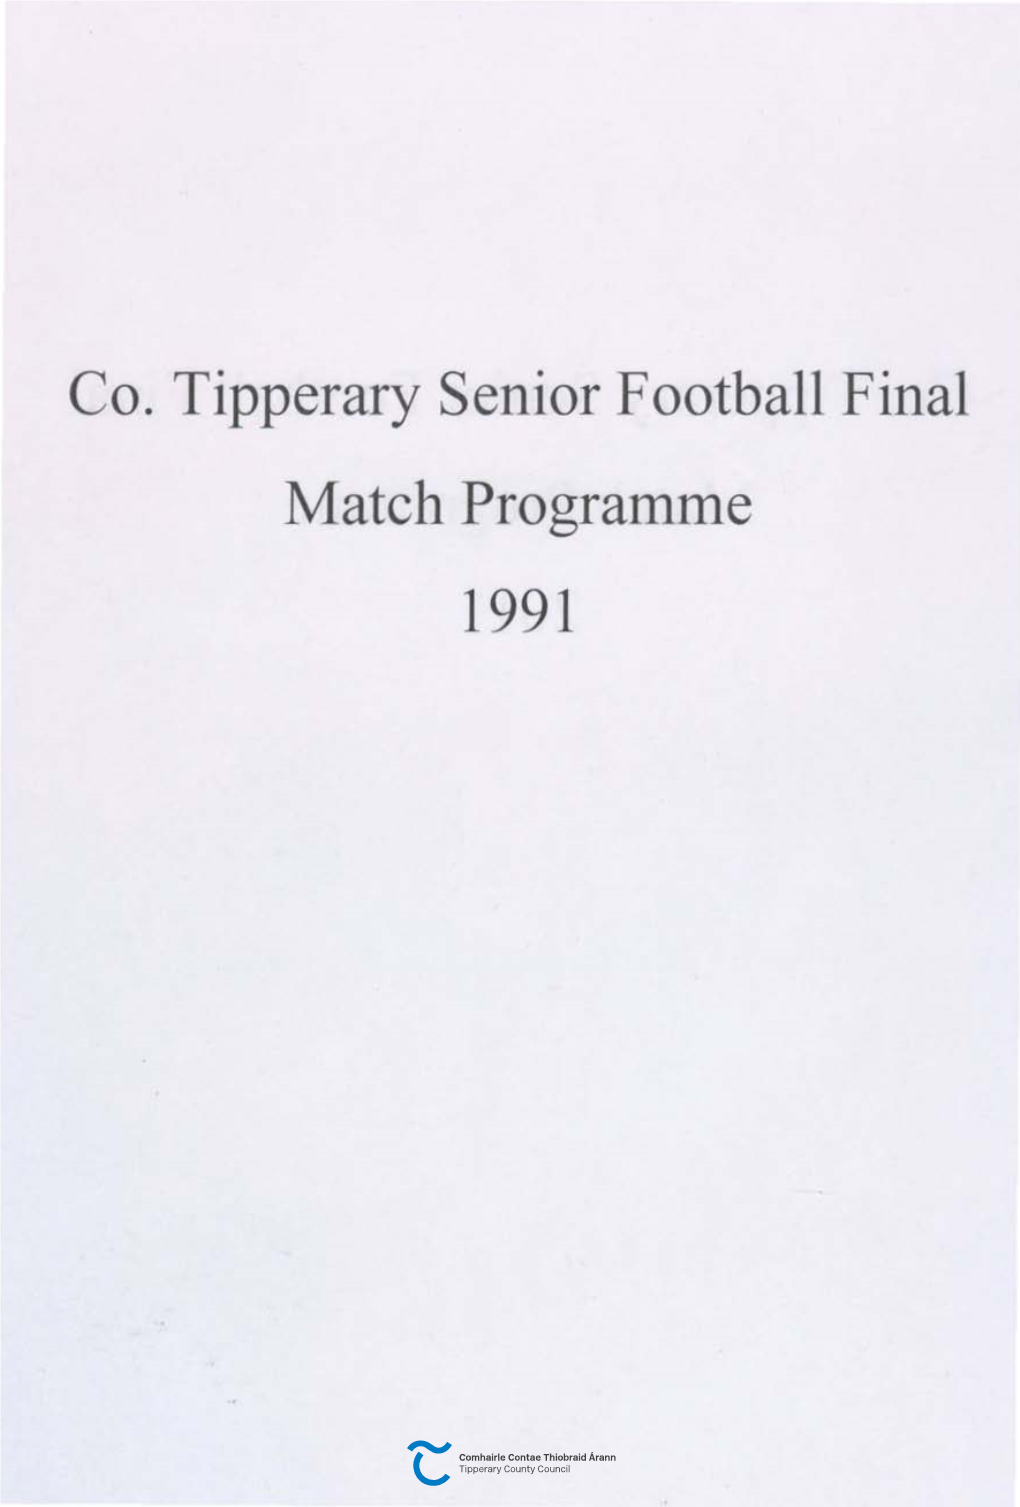 Co. Tipperary Senior Football Final Match Programme 1991